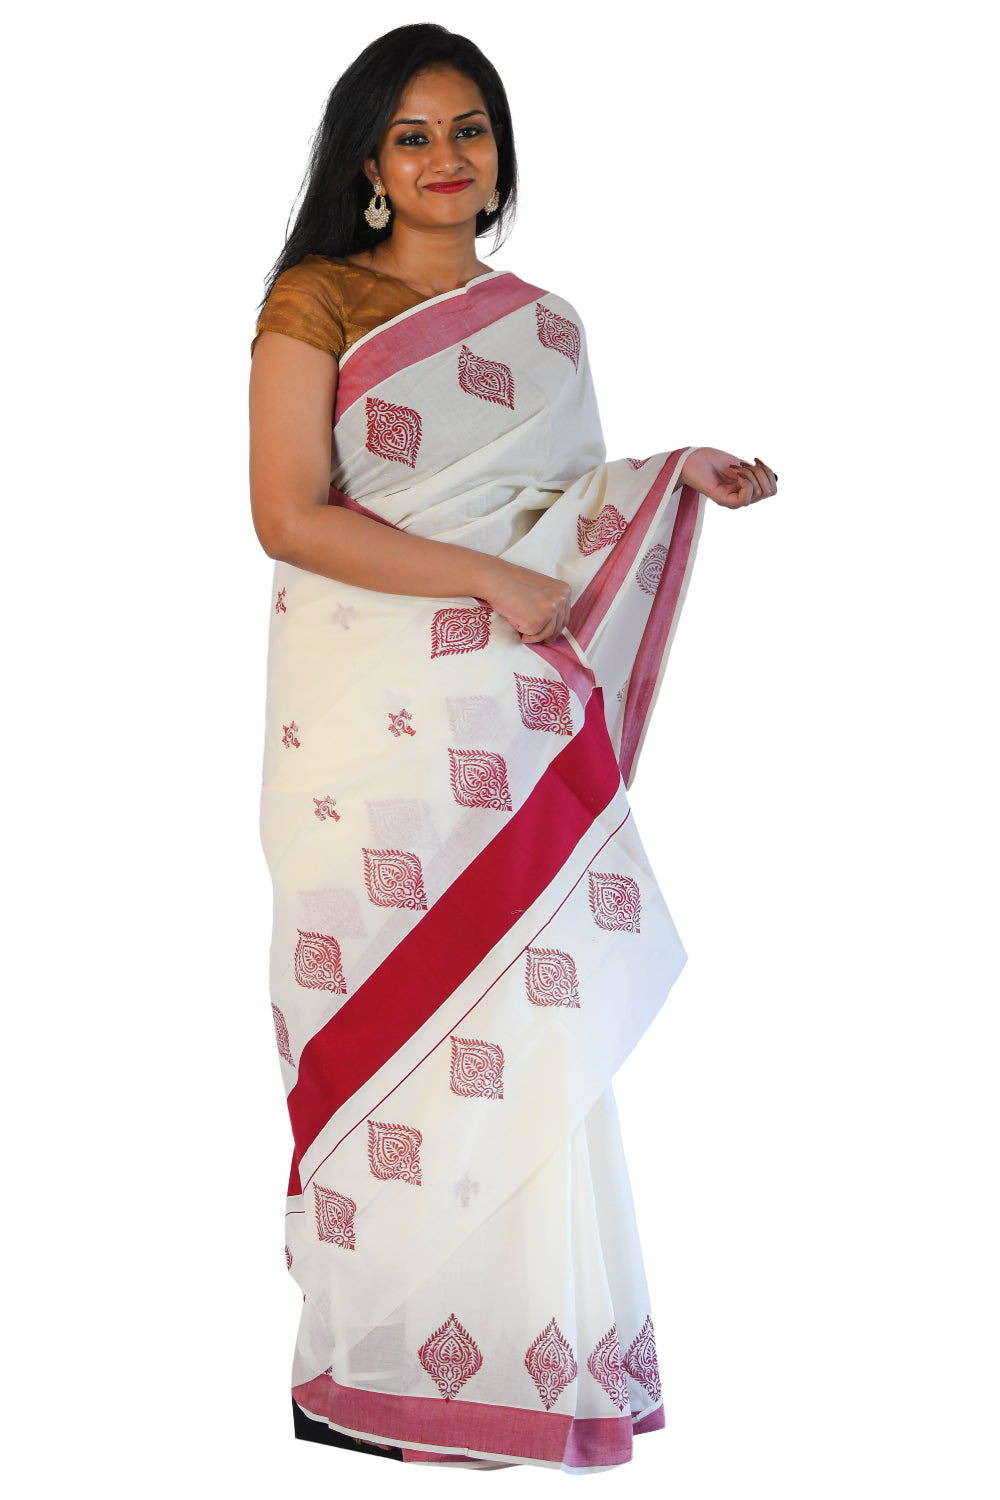 Kerala Saree with Crimson Red Floral Block Print